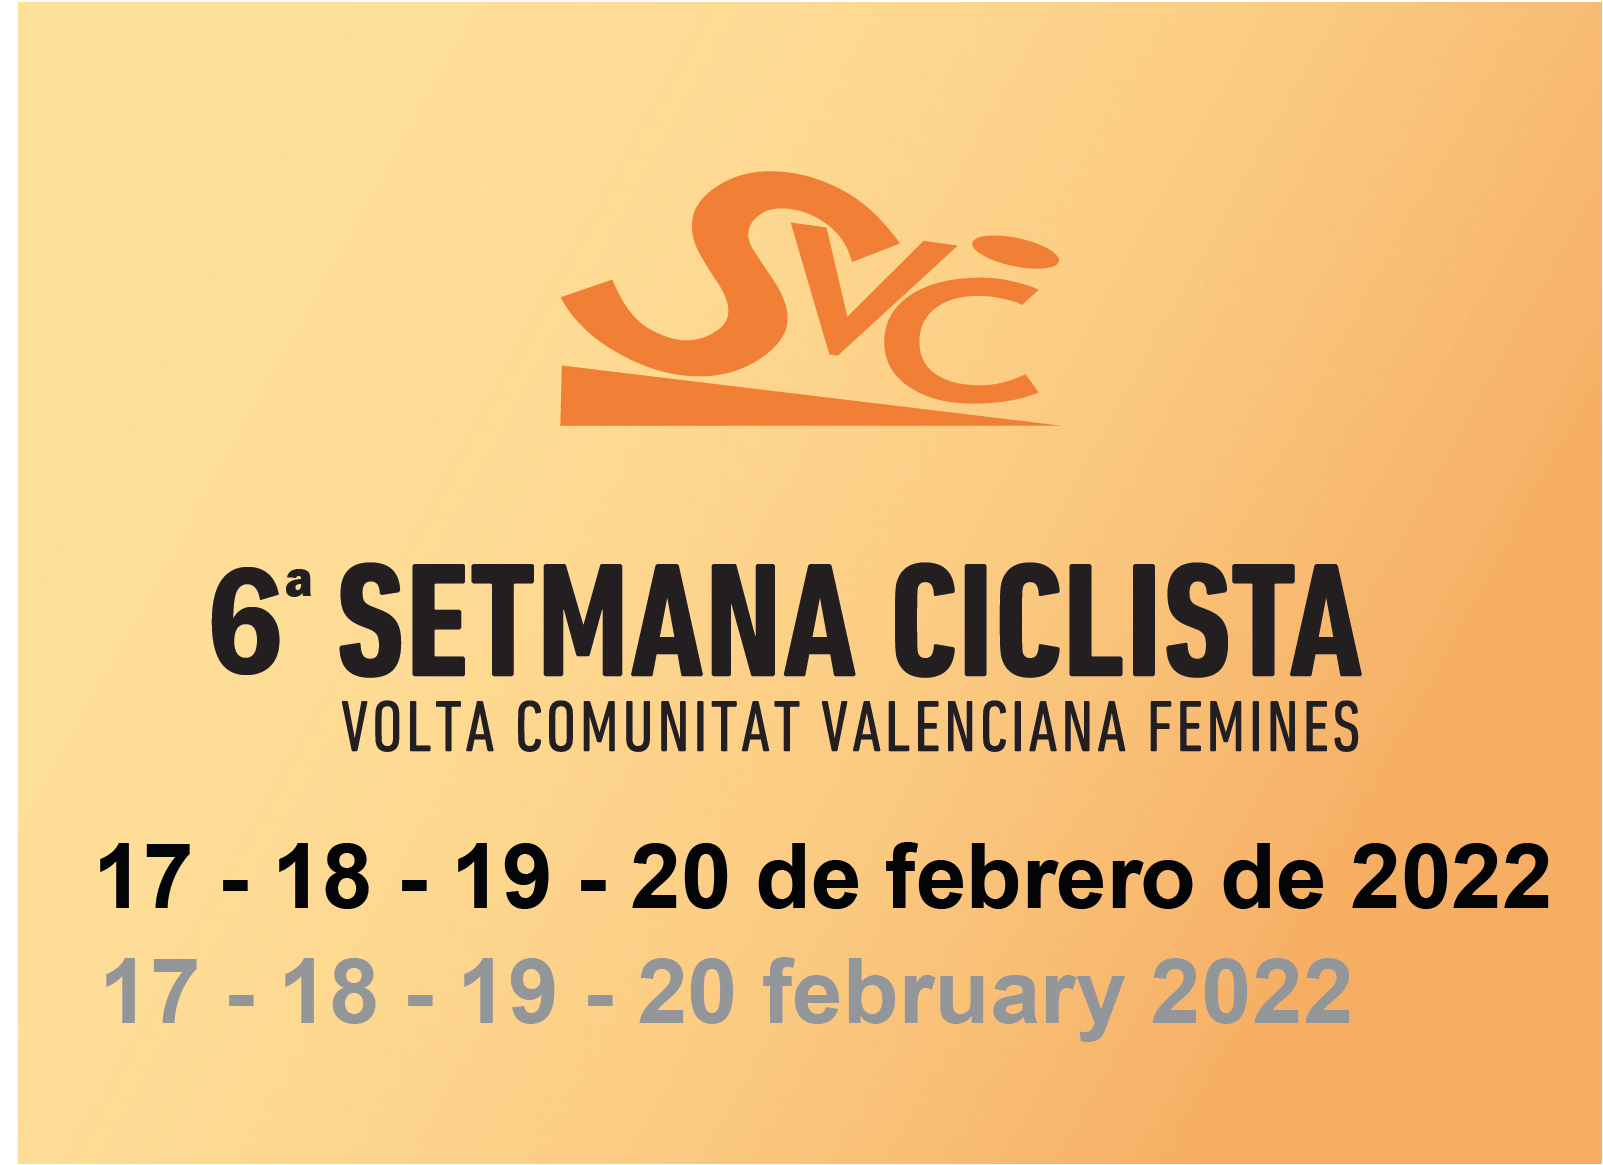 6 Setmana Ciclista Valenciana - Volta Comunitat Valenciana Fèmines